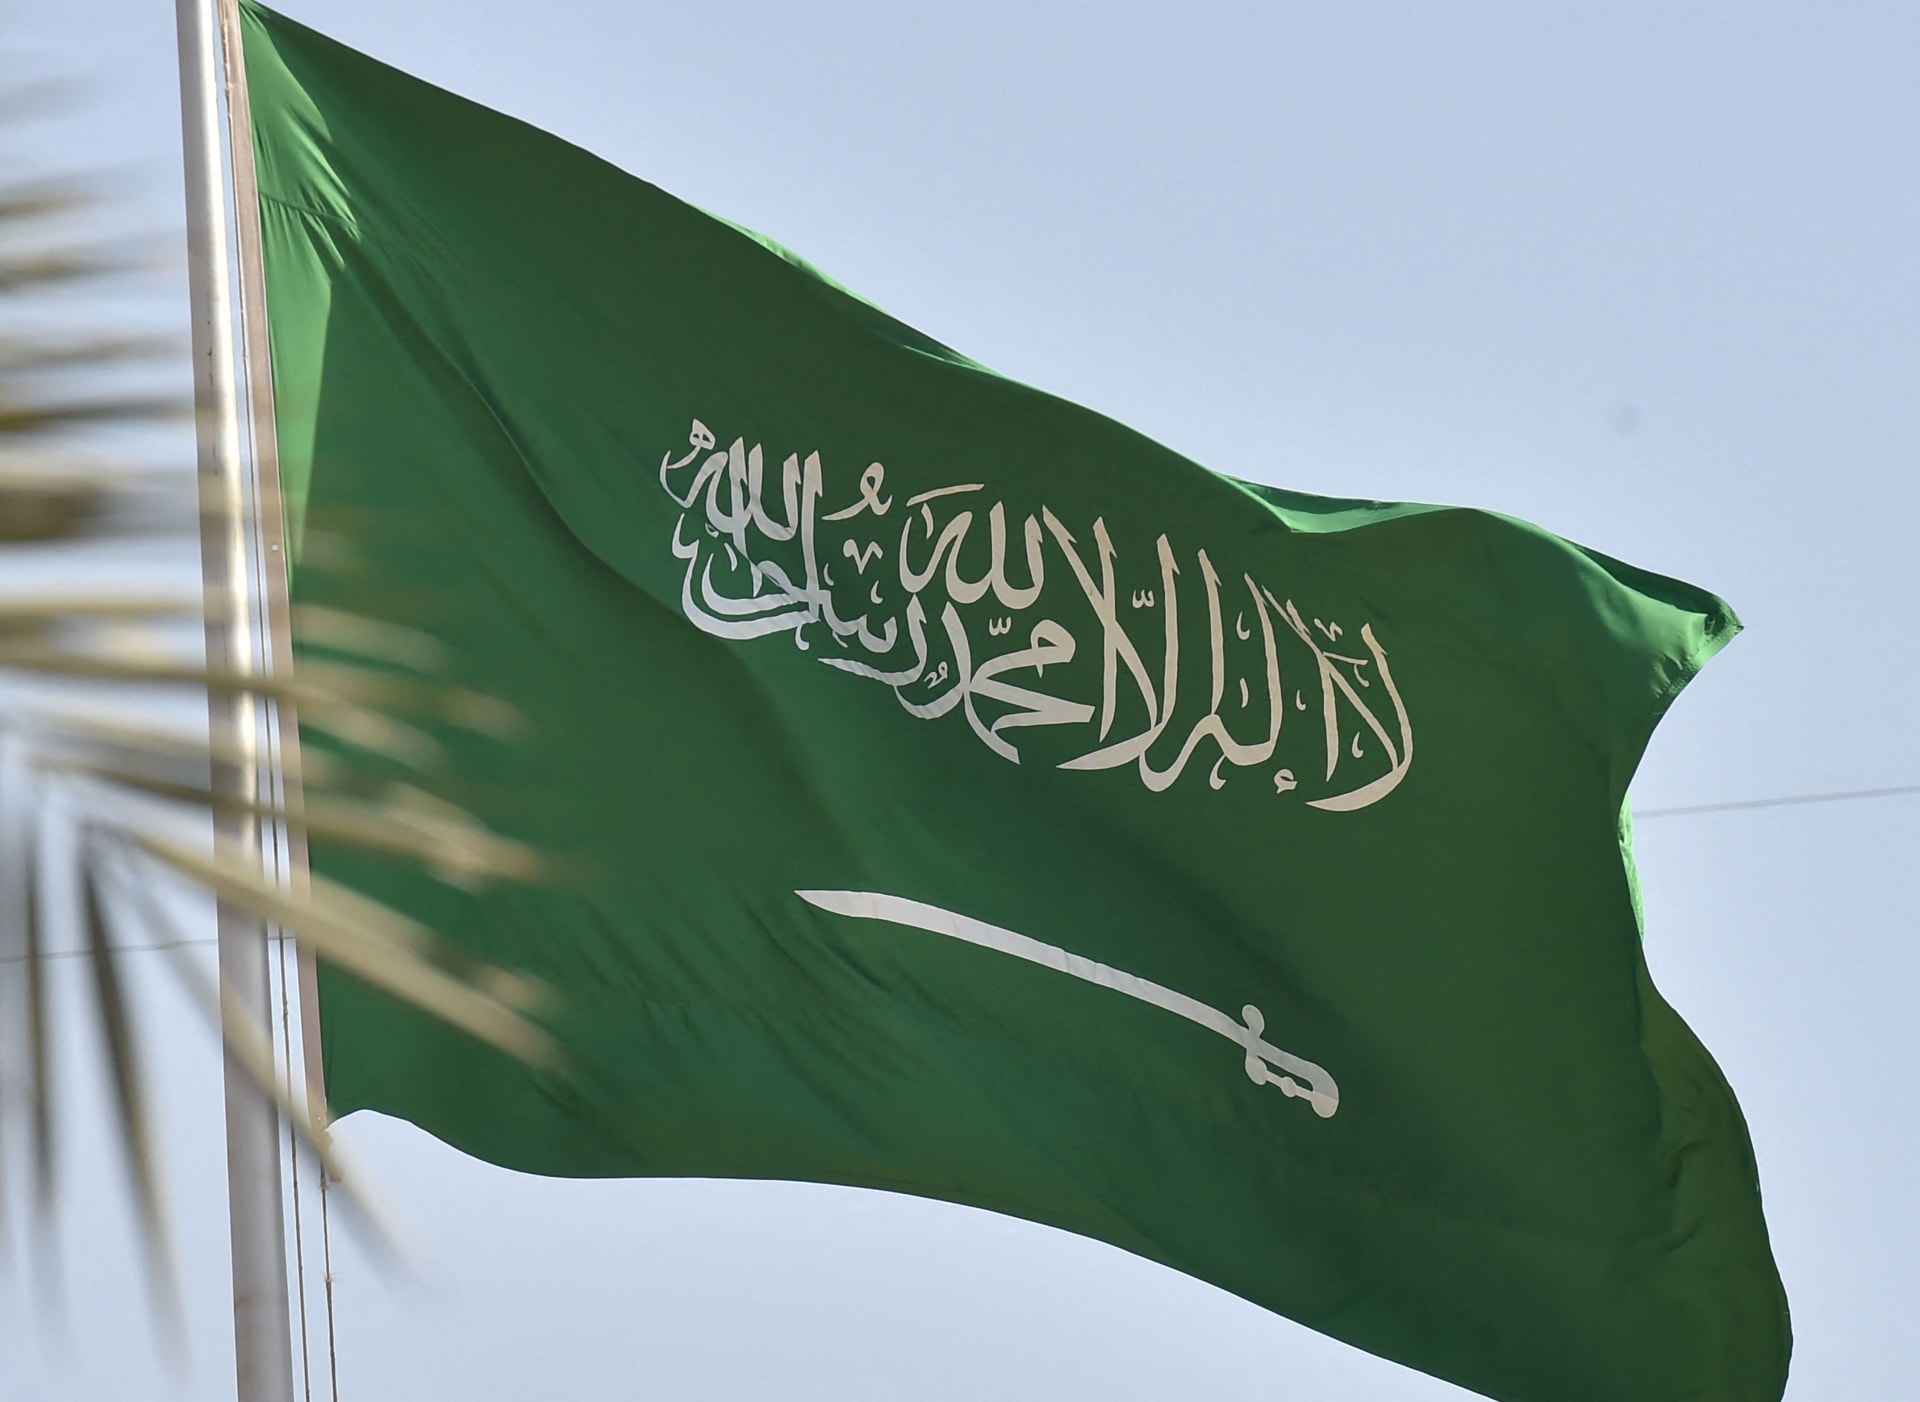 السعودية: حقل الدرة ملكية مشتركة مع الكويت فقط.. وندعو إيران للتفاوض